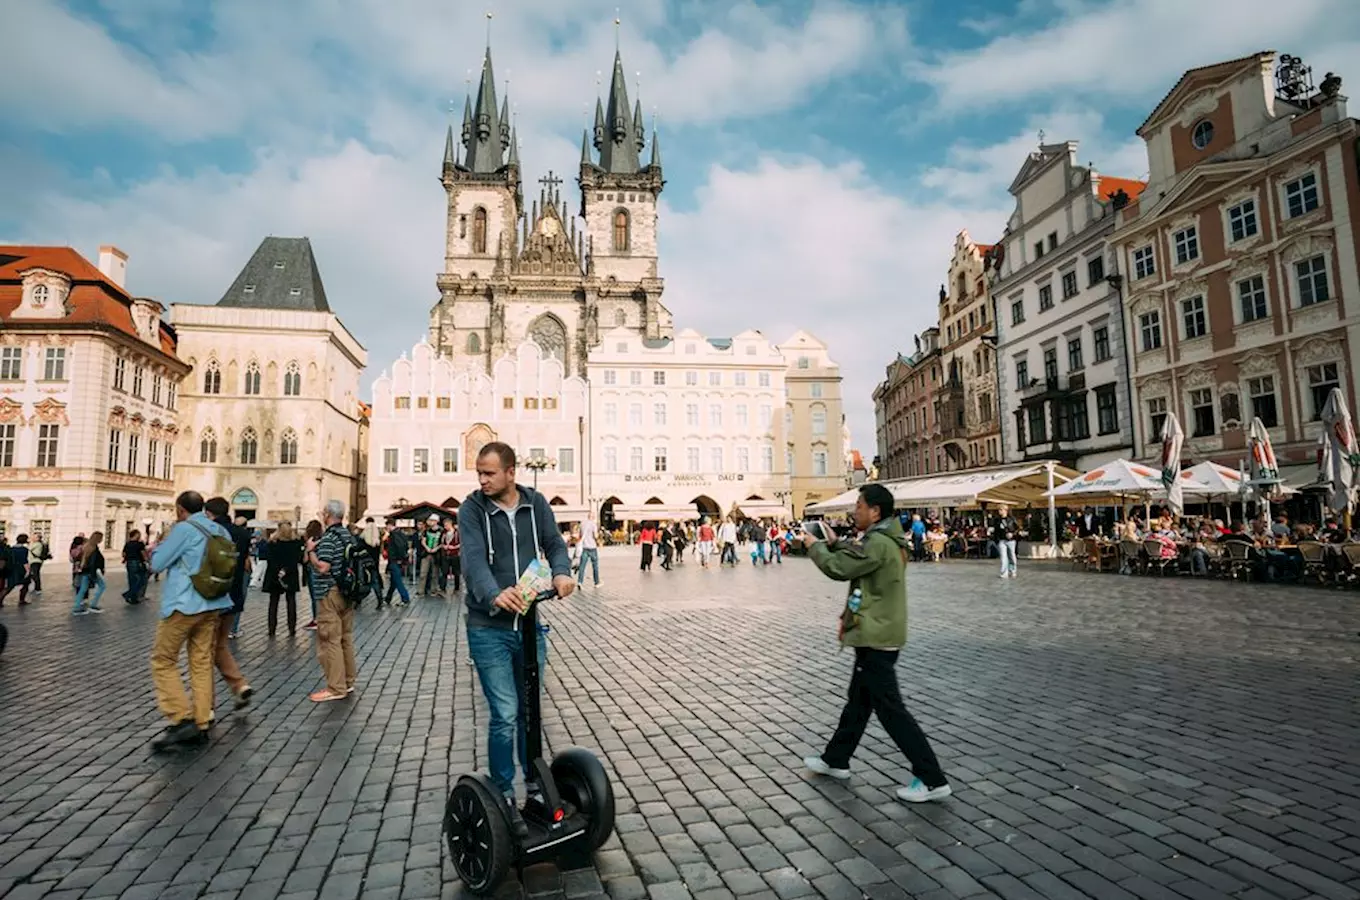 Jezdcům na vozítku segway se Praha uzavírá